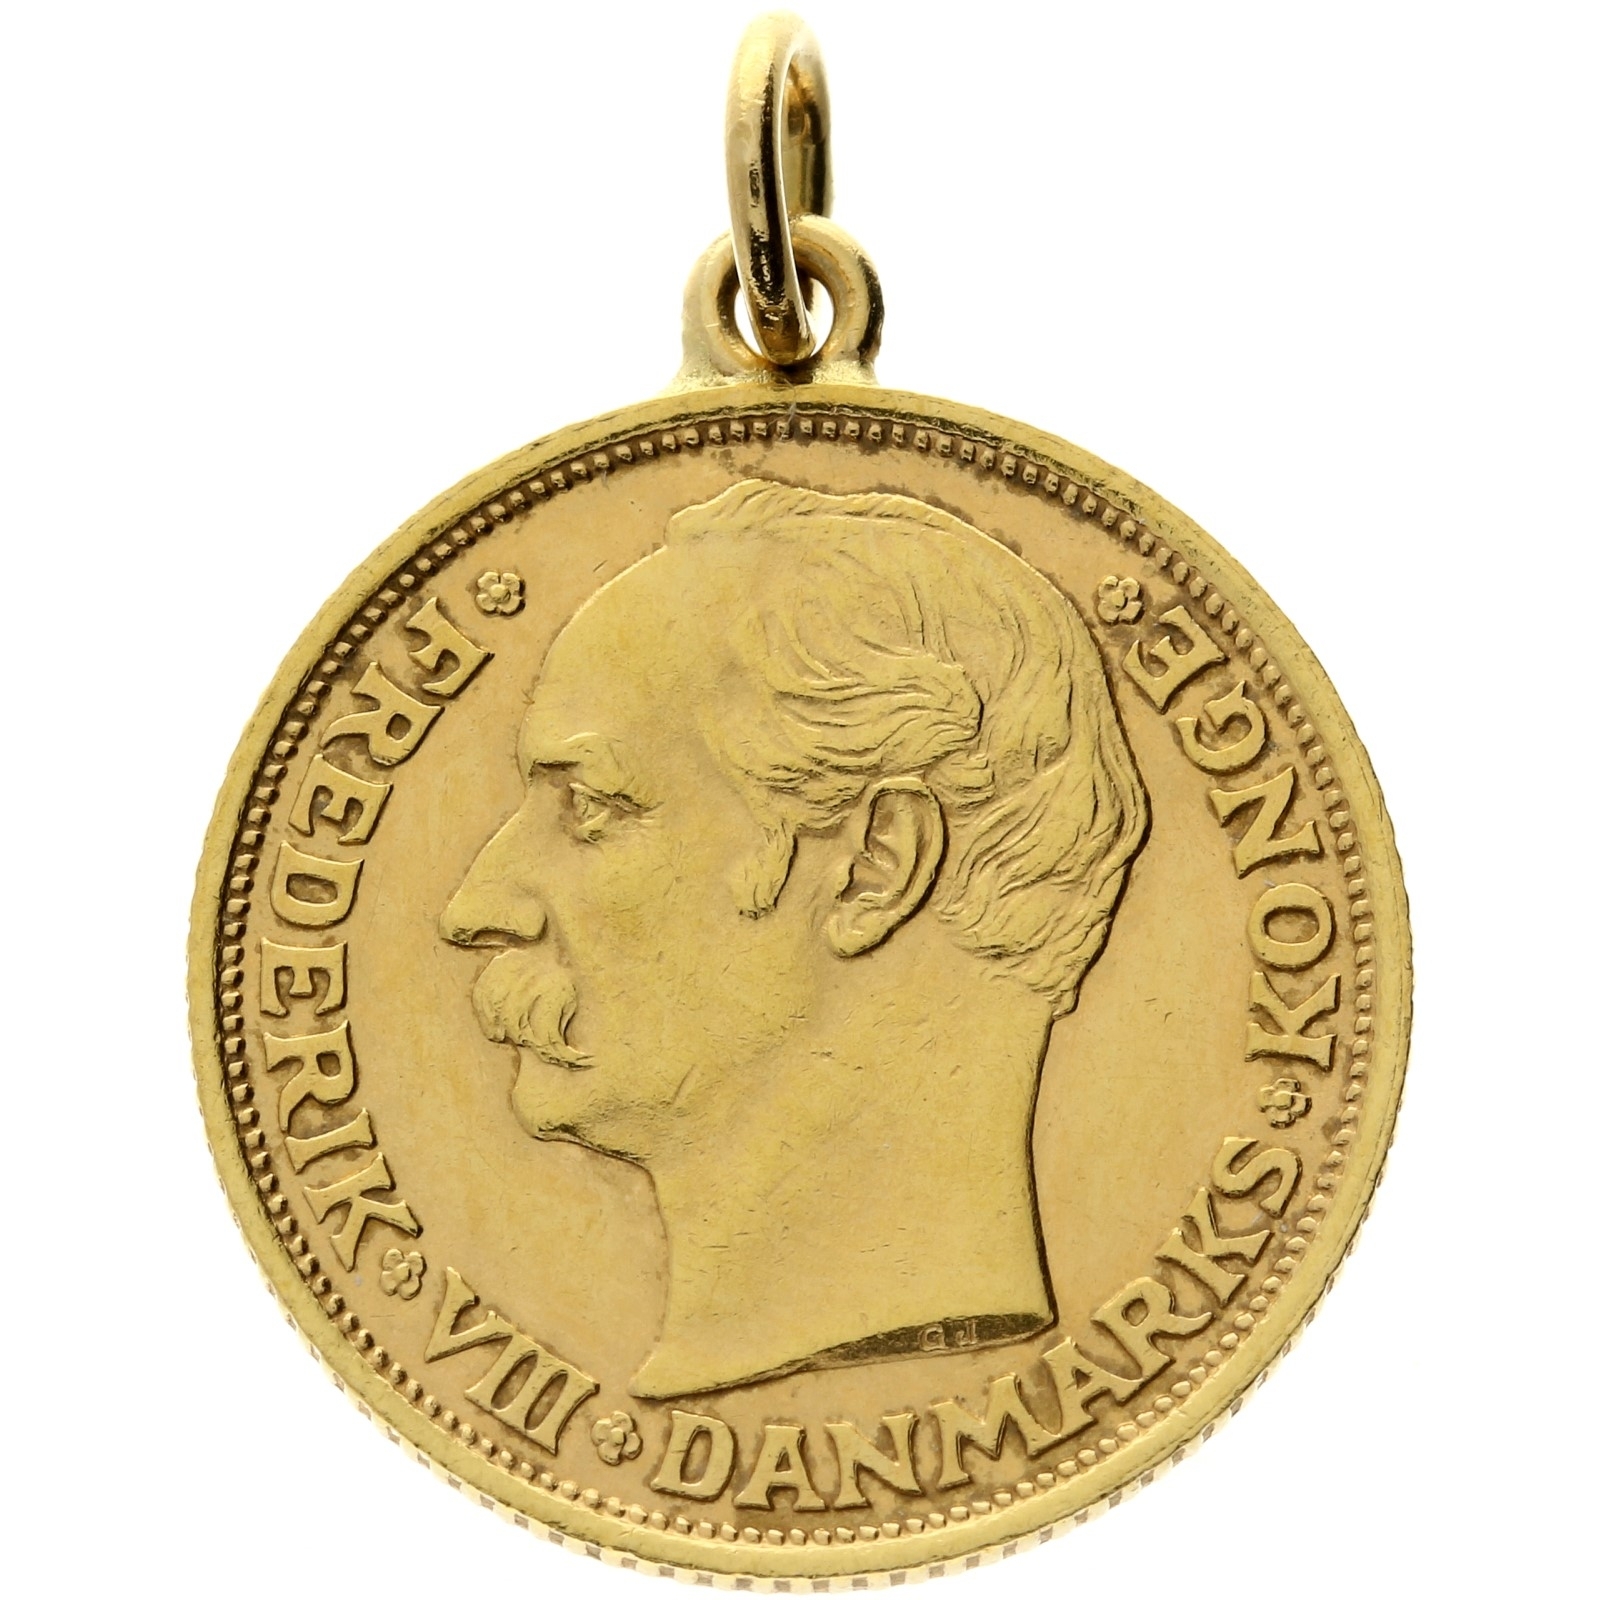 Denmark - 10 kroner - 1908 - Frederik VIII - pendant